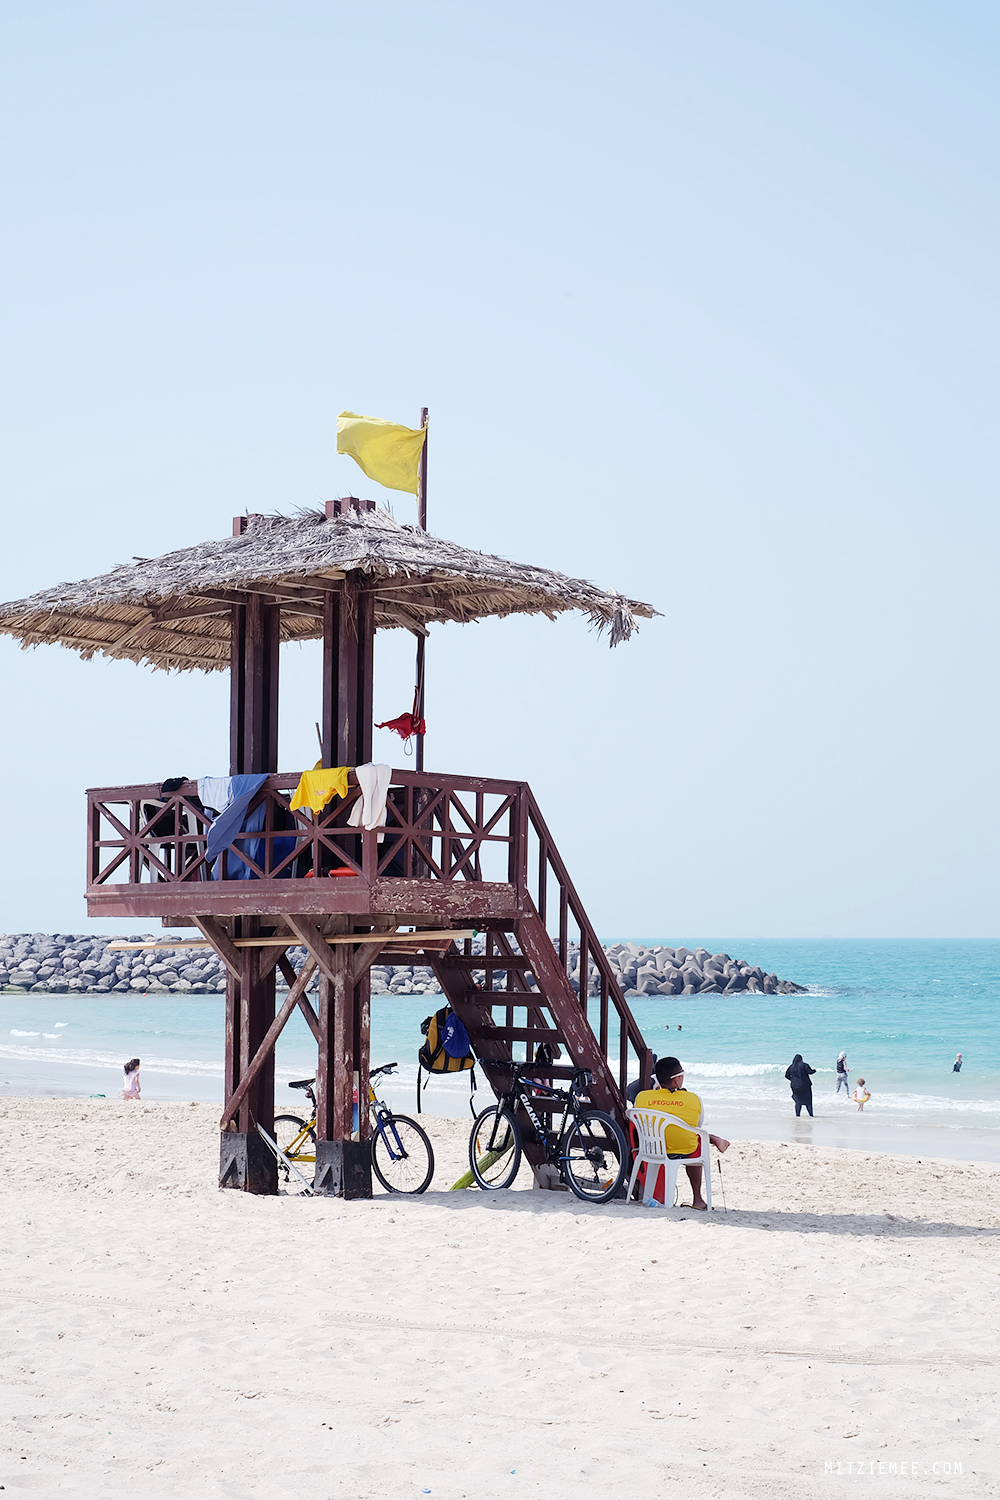 Al Mamzar Beach Park, Dubai